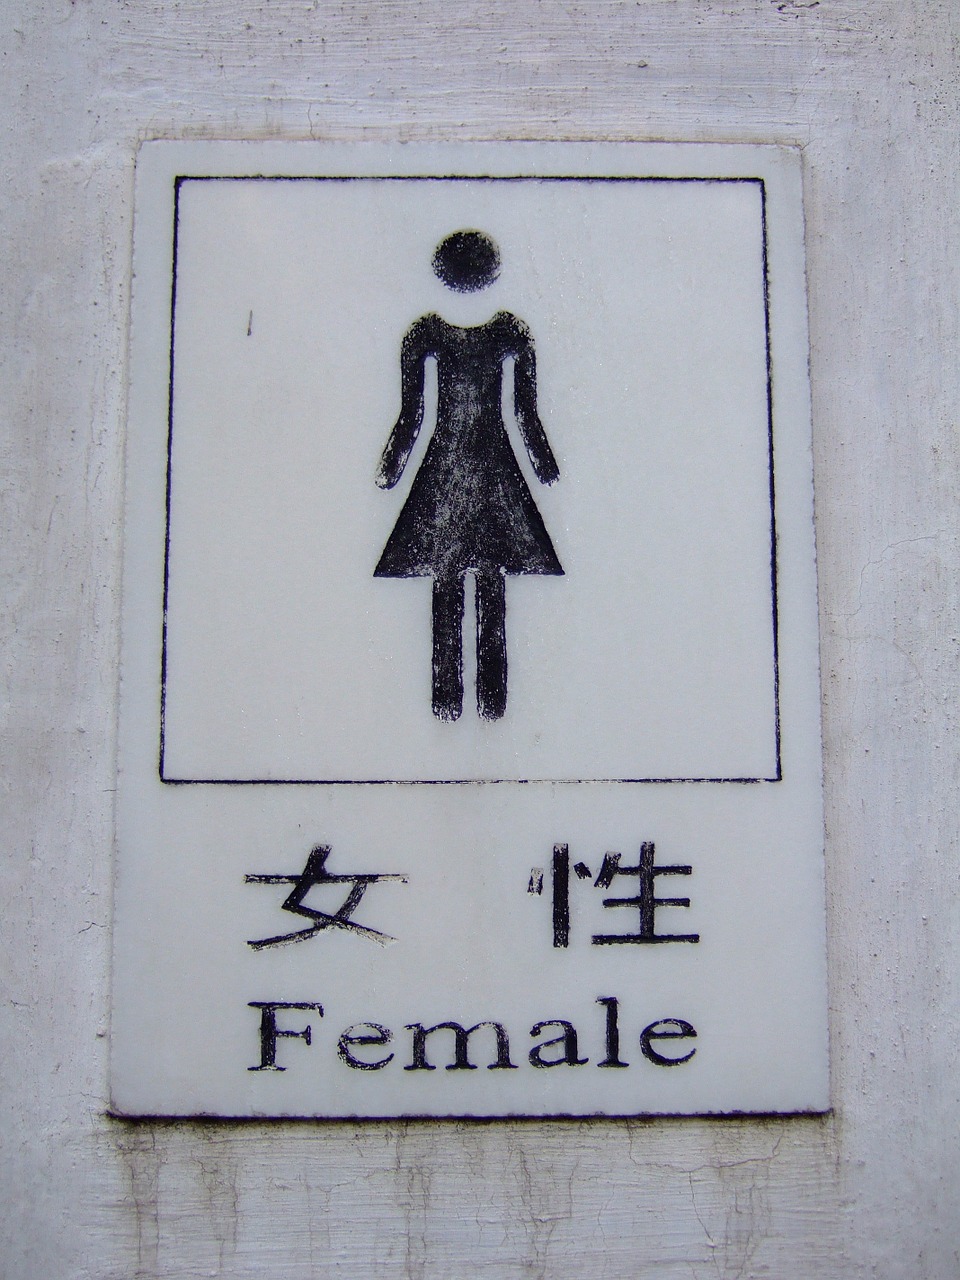 female toilet sign free photo